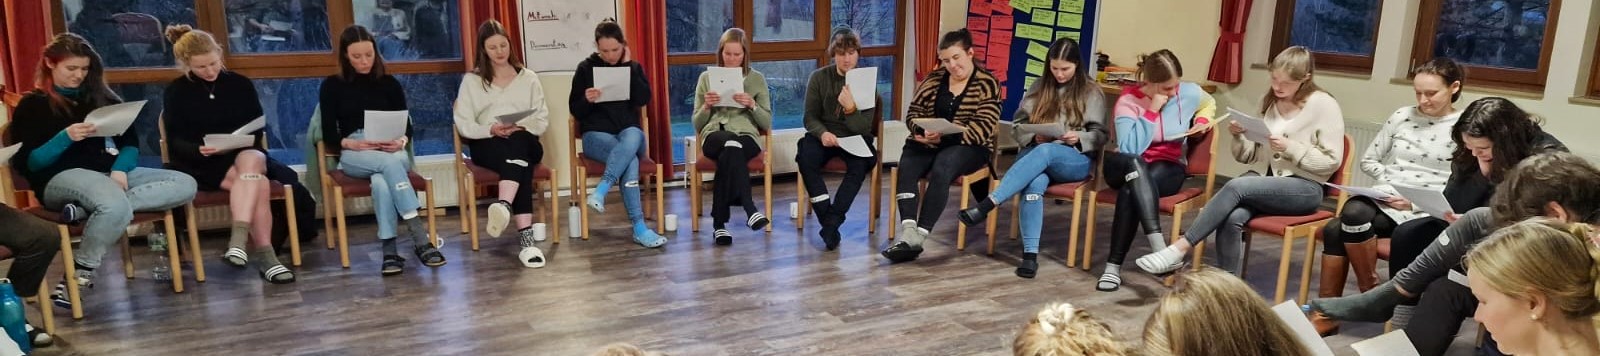 Eine Gruppe Junger Menschen sitzt in einem Stuhlkreis und liest Briefe